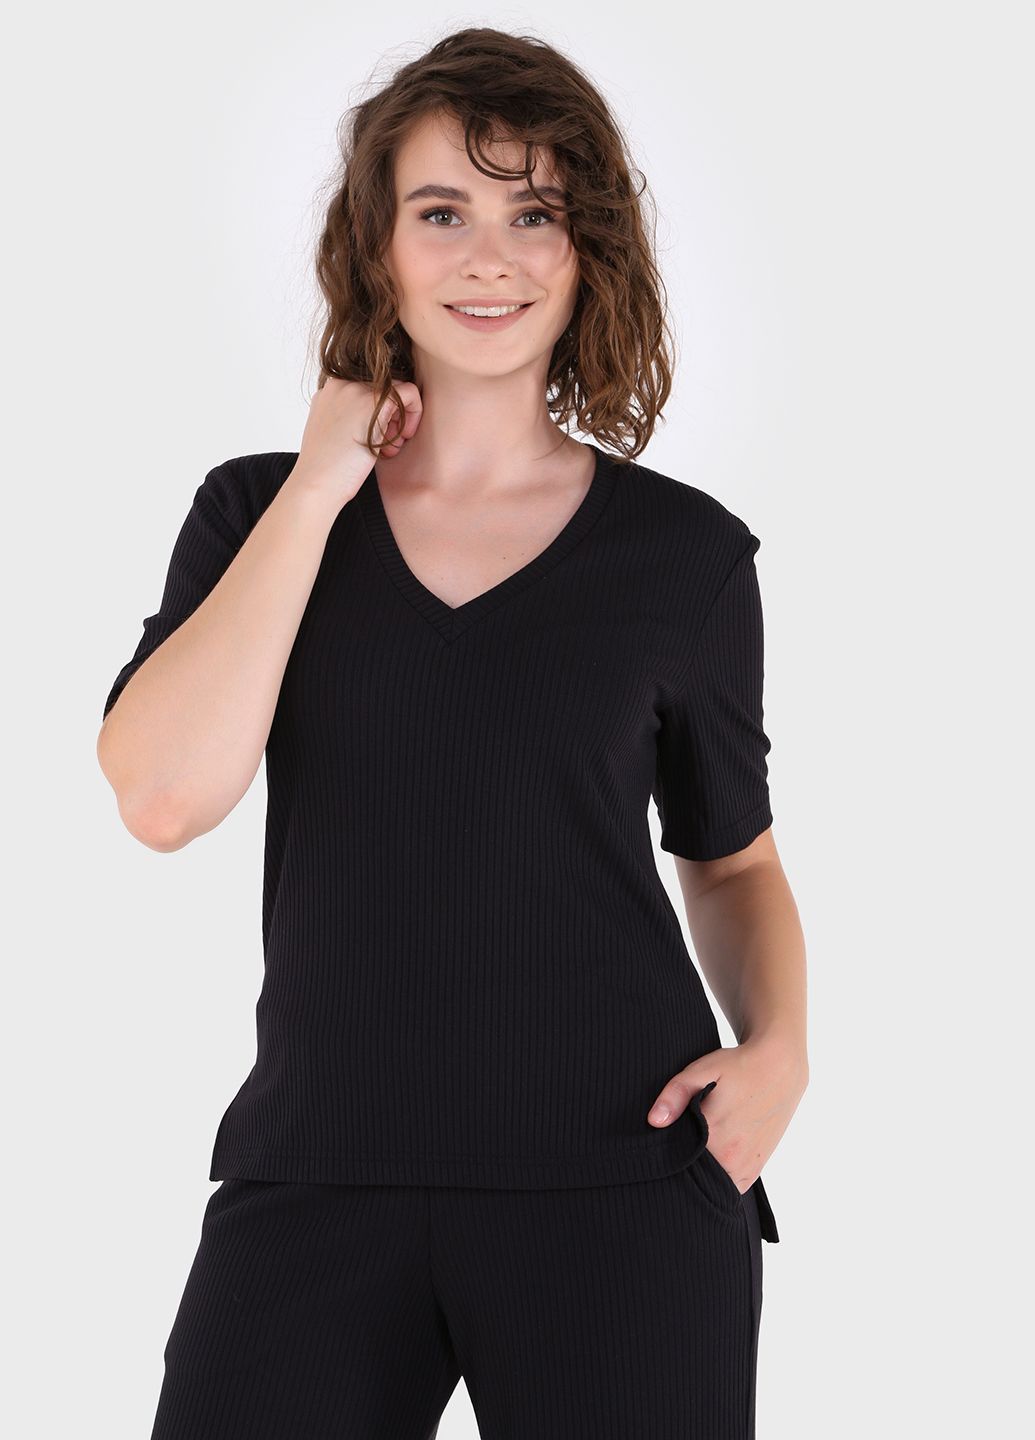 Купить Костюм женский в рубчик черного цвета Merlini Аликанте 100000097, размер 42-44 в интернет-магазине